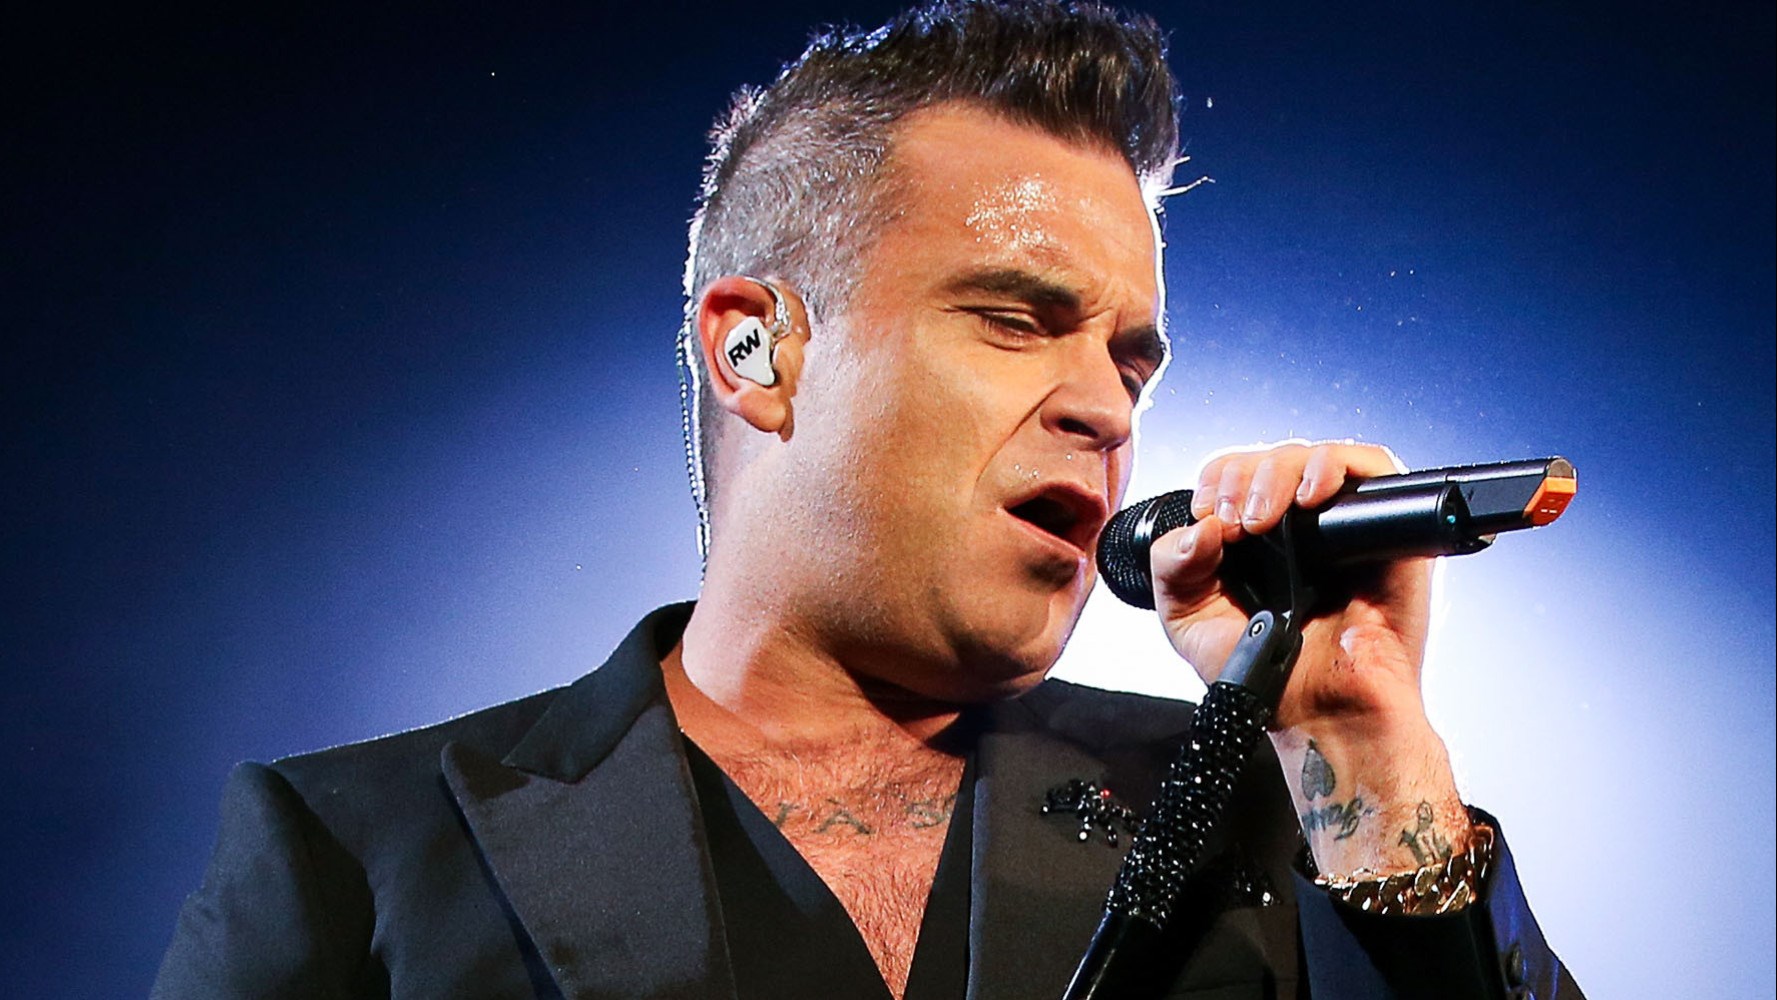 Τα δάκρυα του Robbie Williams στη σκηνή για τα θύματα του Μάντσεστερ – ΒΙΝΤΕΟ